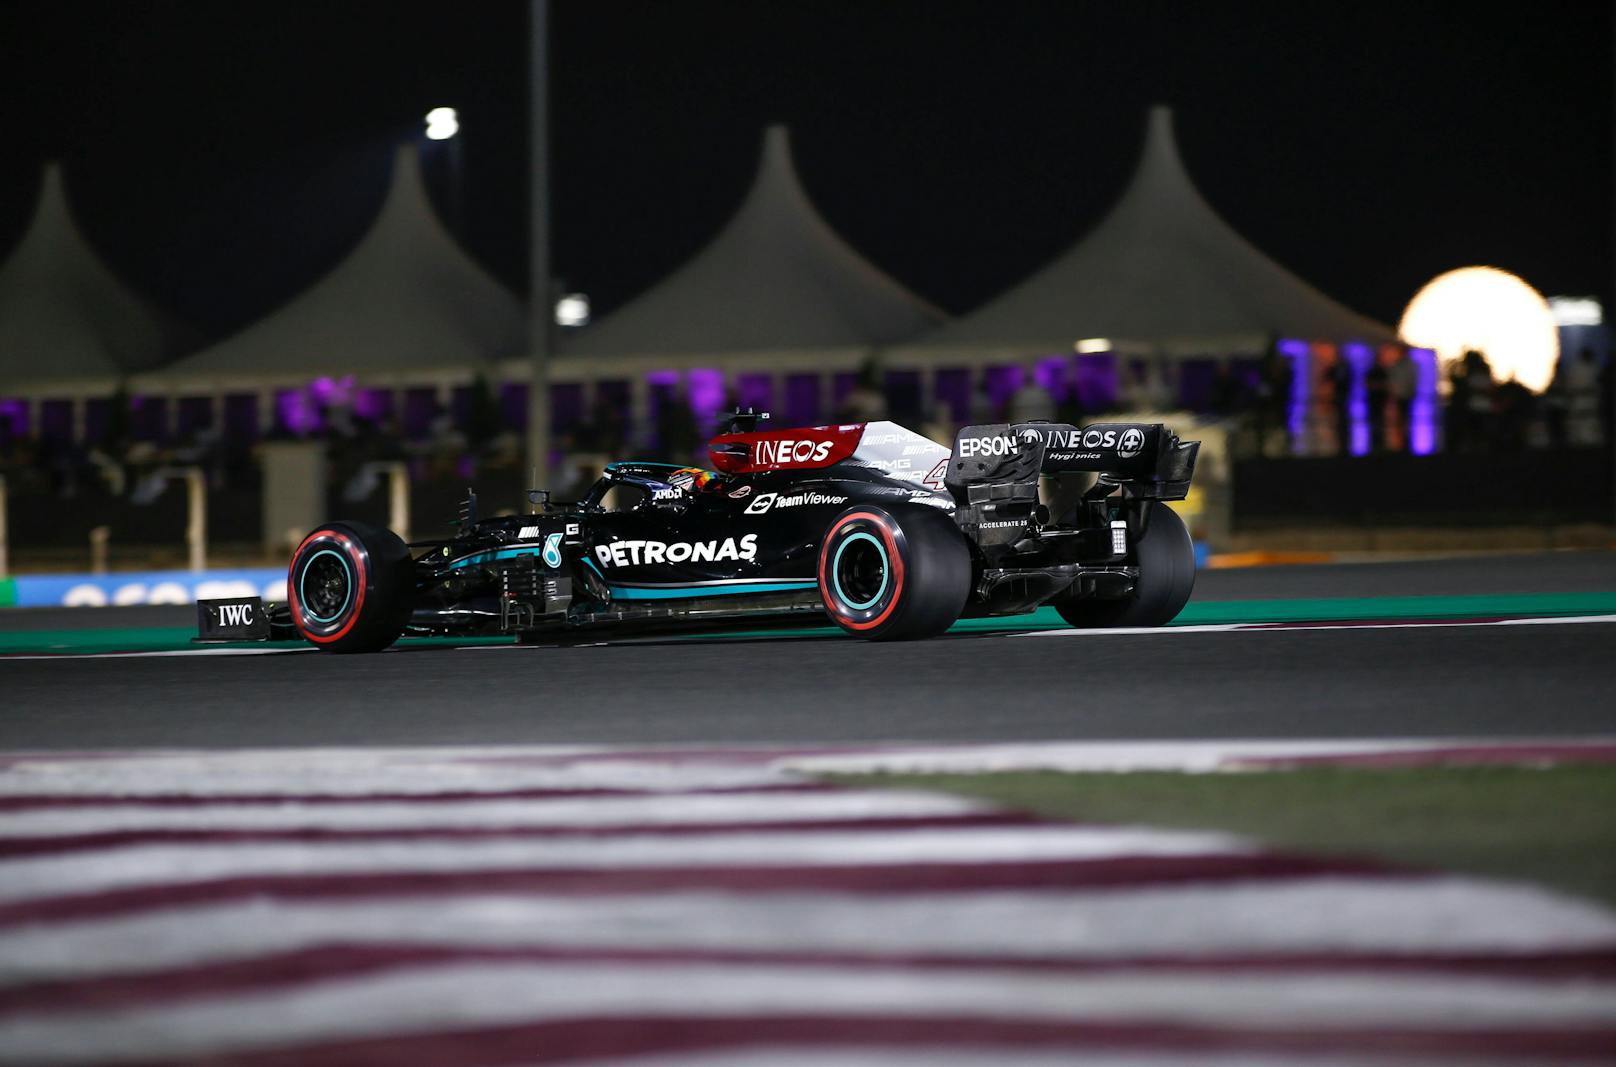 Lewis Hamilton fährt auch bei der Premiere in Katar zum Sieg. Dieses Mal ist es ein ungefährdeter Start-Ziel-Triumph vor Verstappen. Der WM-Vorsprung des Niederländers schmilzt zwei Rennen vor Saisonende auf acht Punkte.